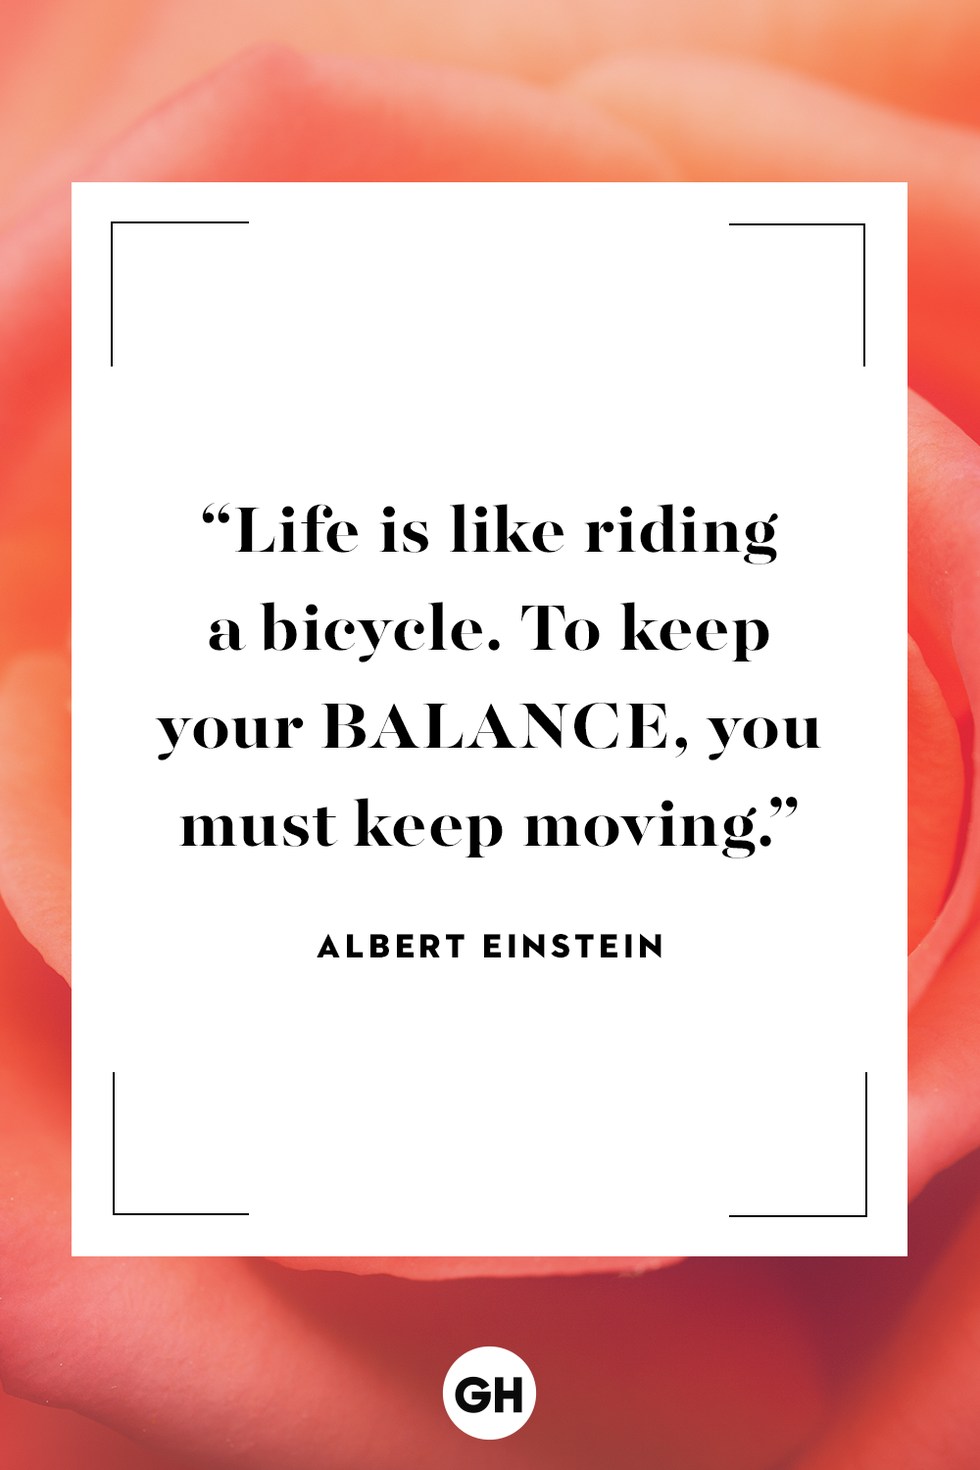 Albert Einstein inspirational quote